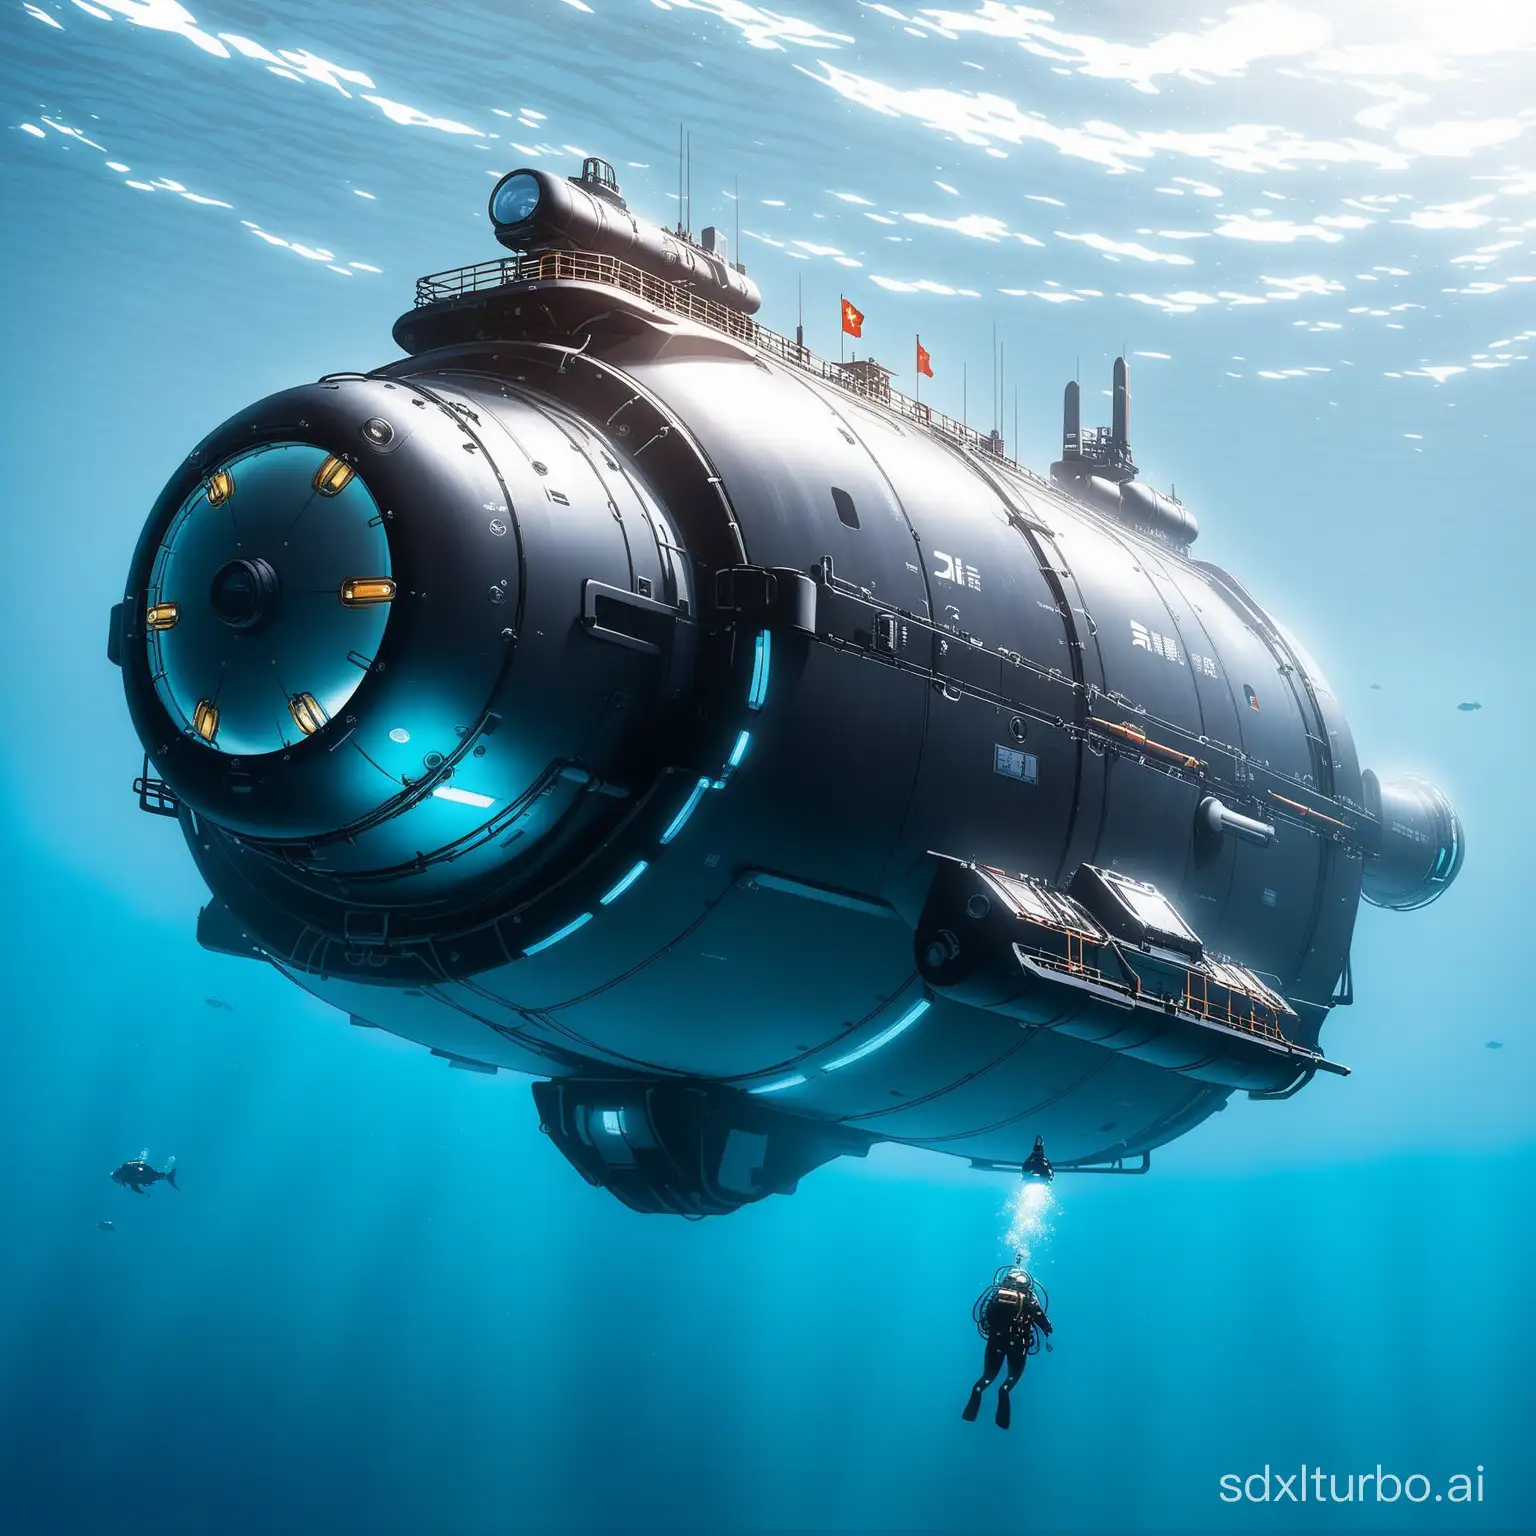 Chinas-Jiaolong-Submersible-in-SciFi-Setting